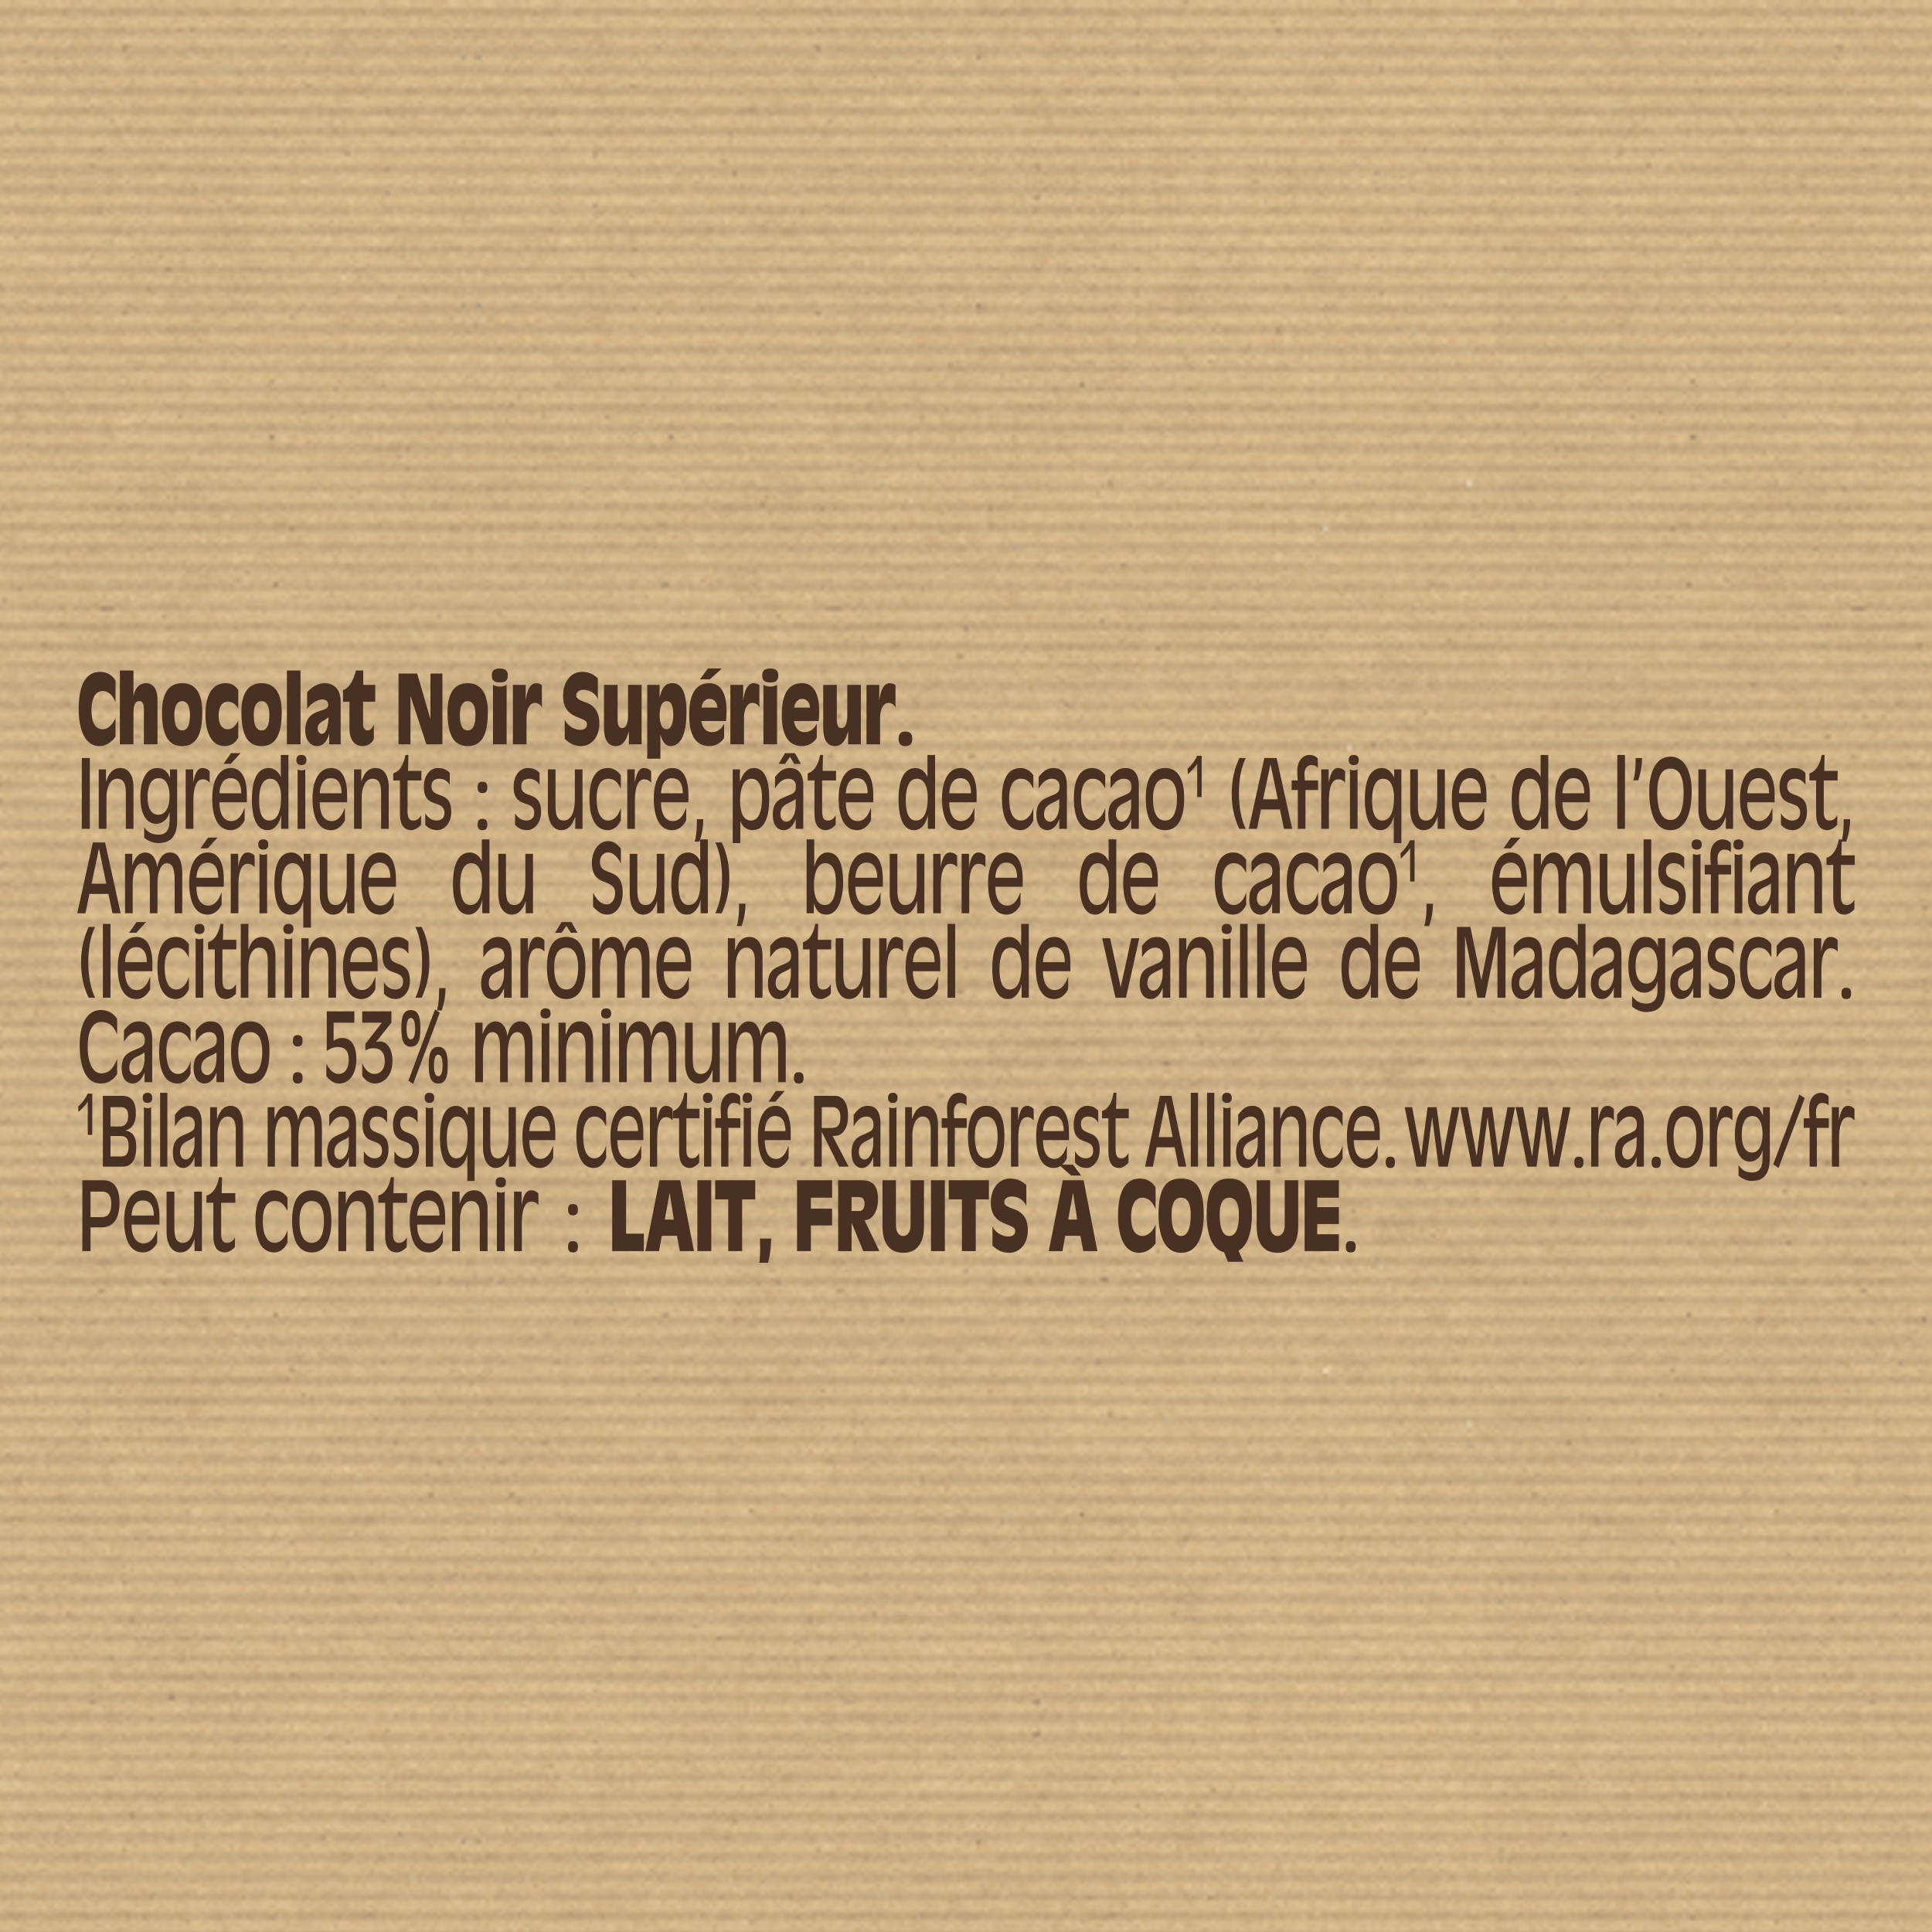 NESTLE : Dessert - Tablette de chocolat noir corsé pâtissier - chronodrive